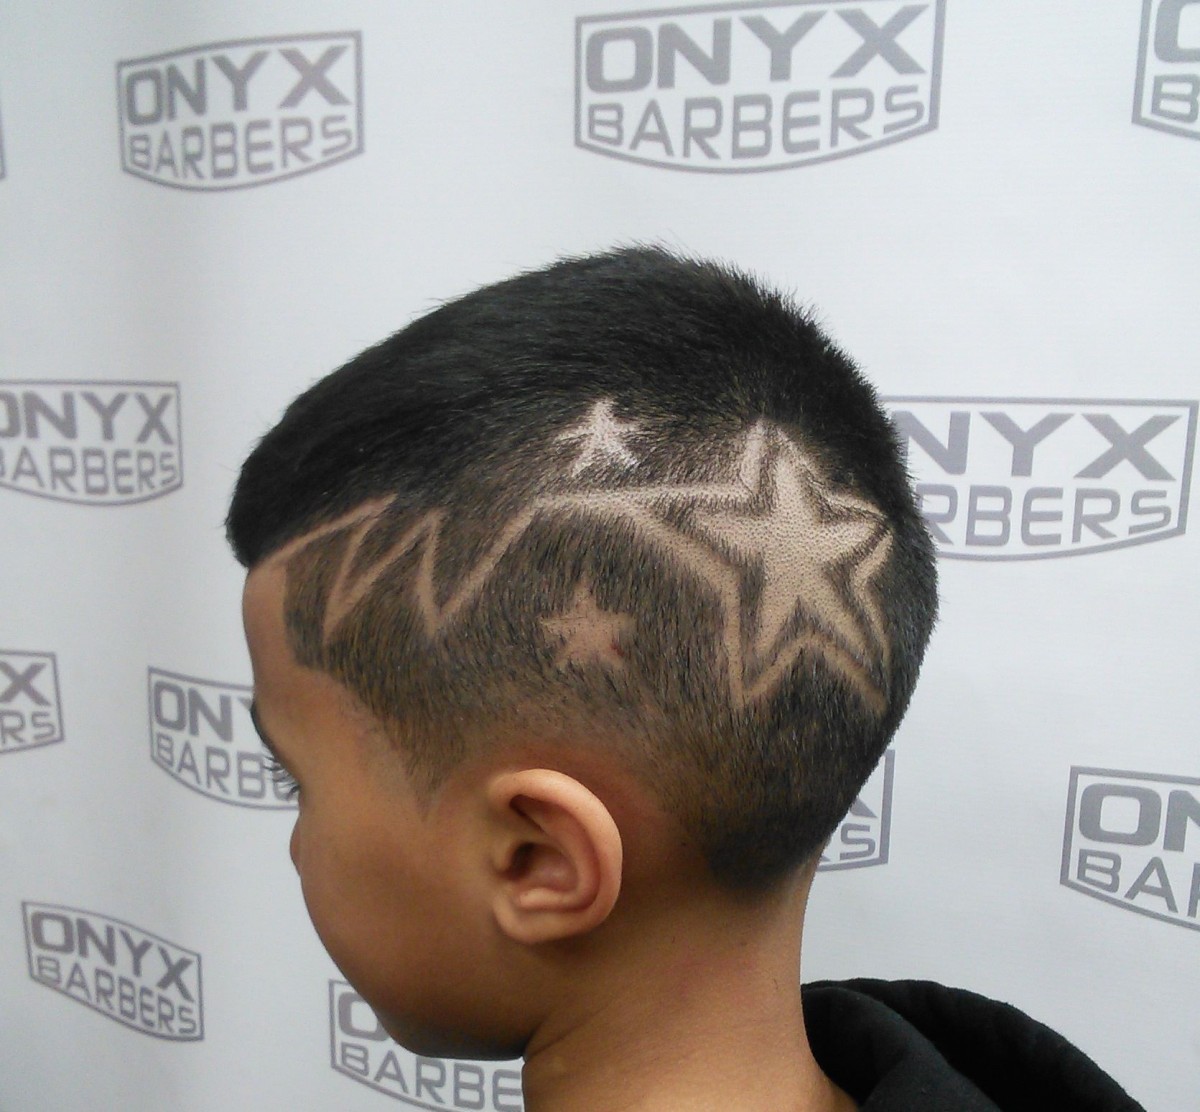 ONYX Barbers